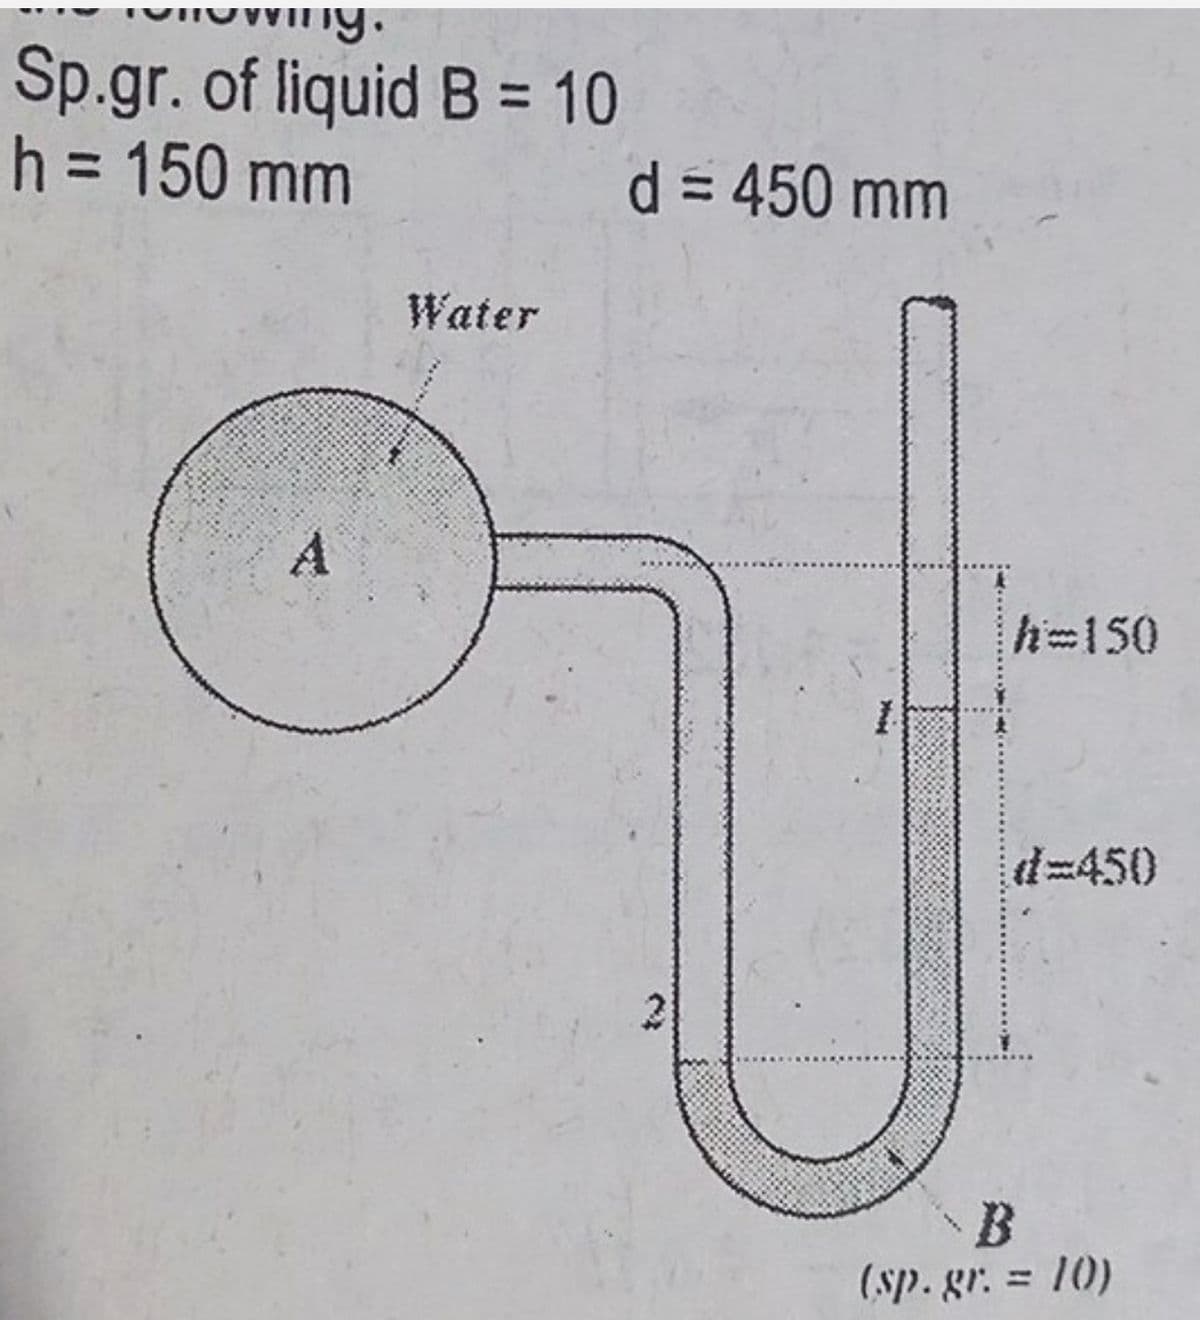 Sp.gr. of liquid B = 10
h = 150 mm
A
Water
d = 450 mm
D
h=150
#=450
(sp. gr. = 10)